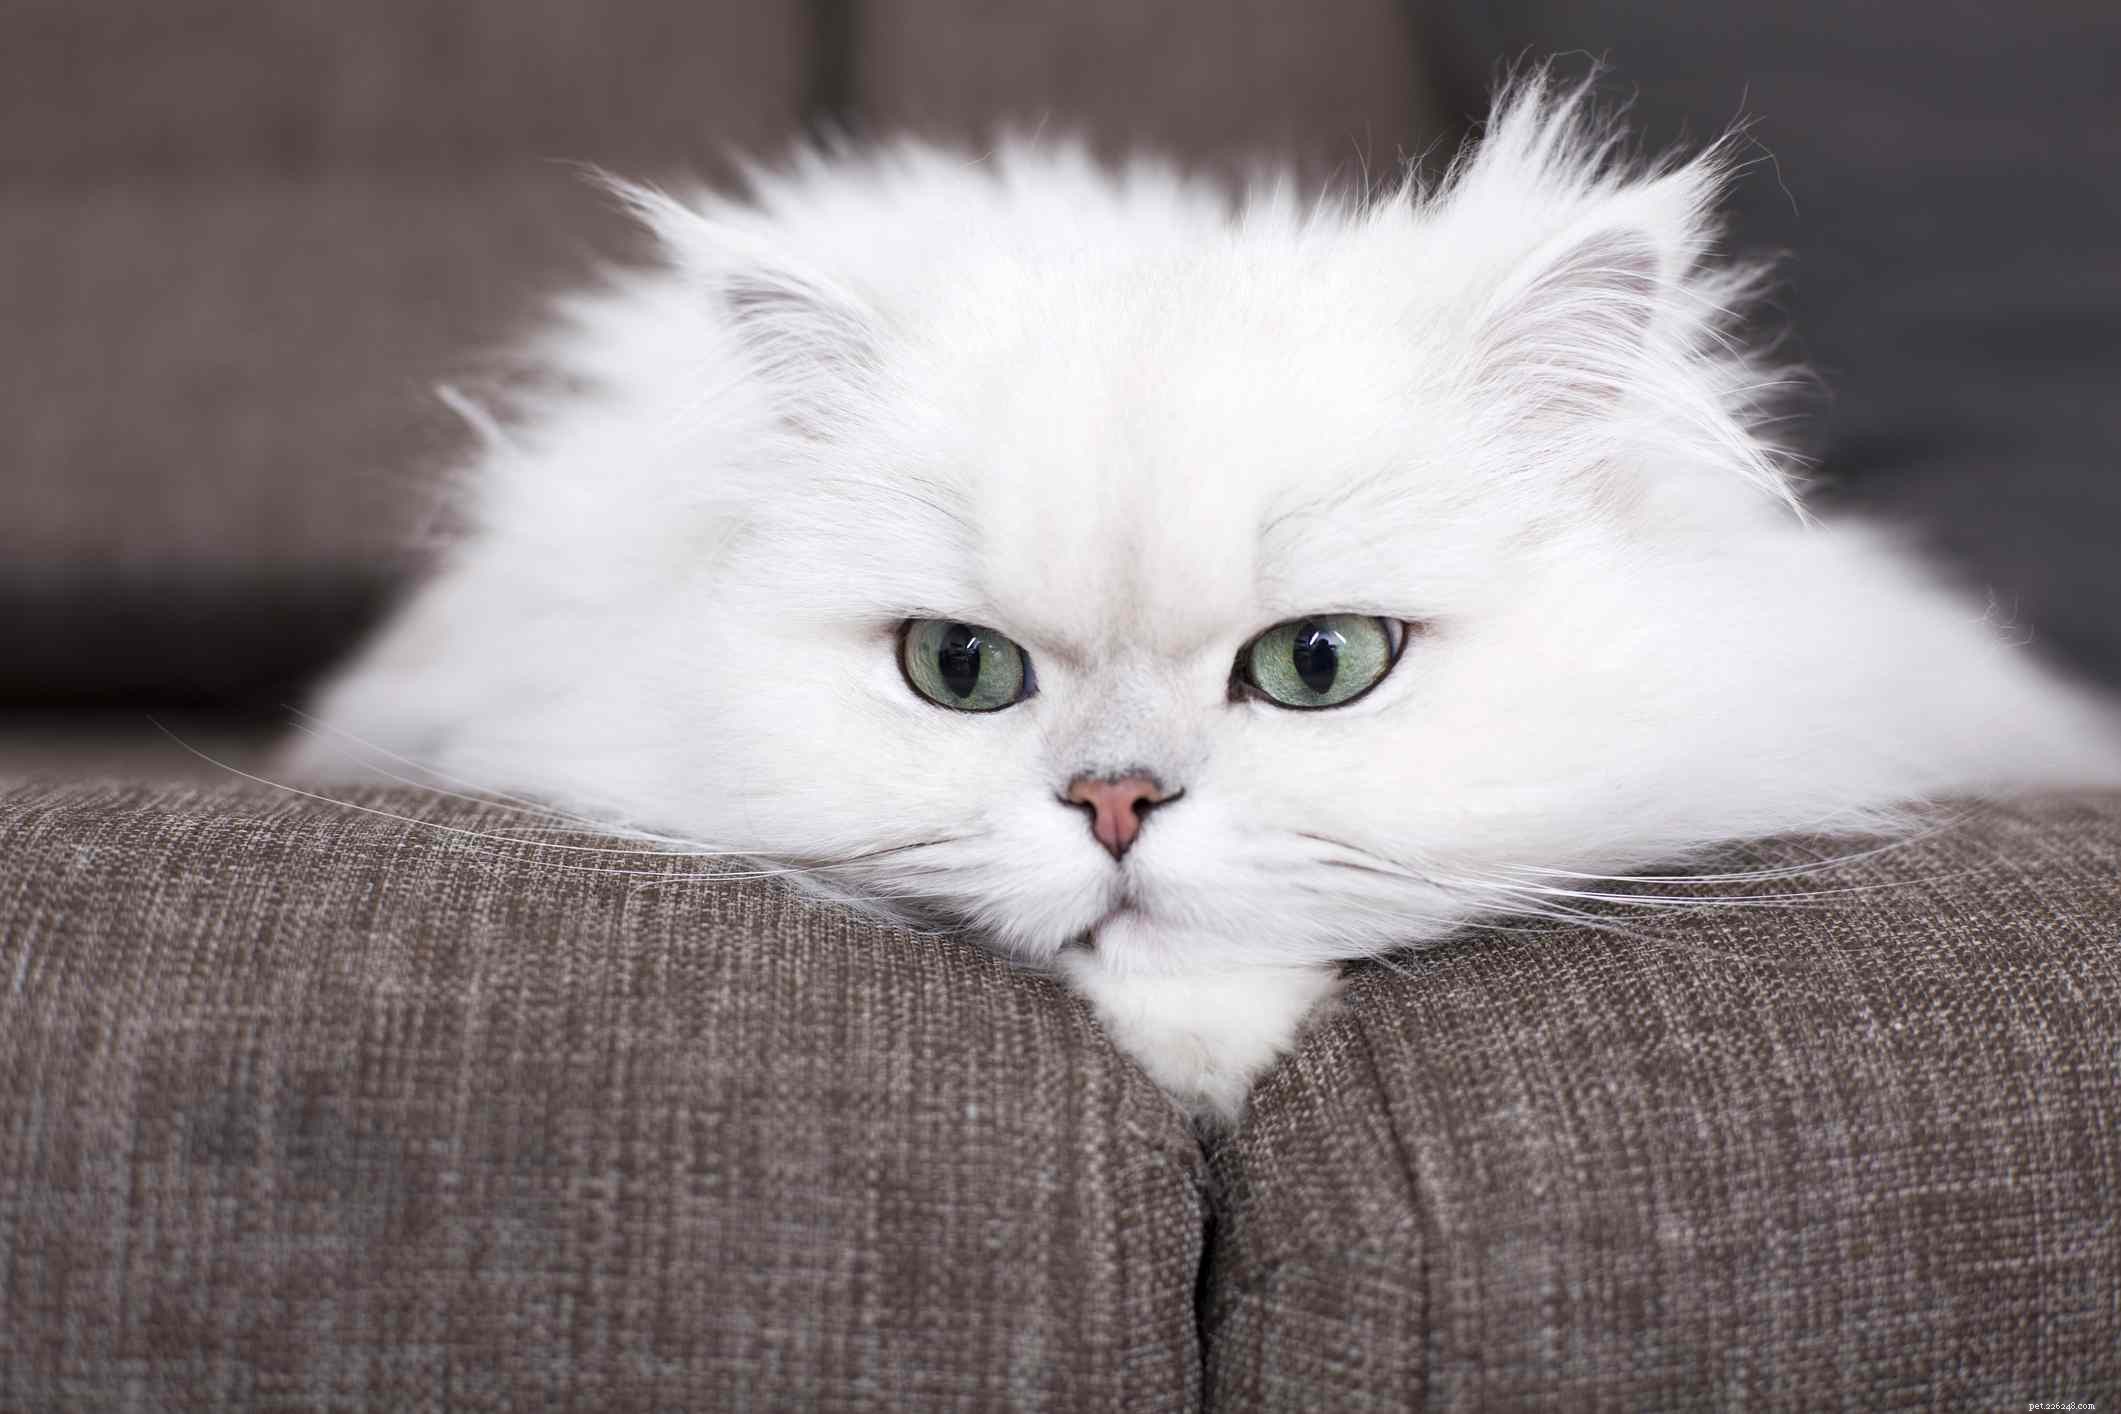 페르시아 고양이에게 가장 사랑스러운 이름 15개